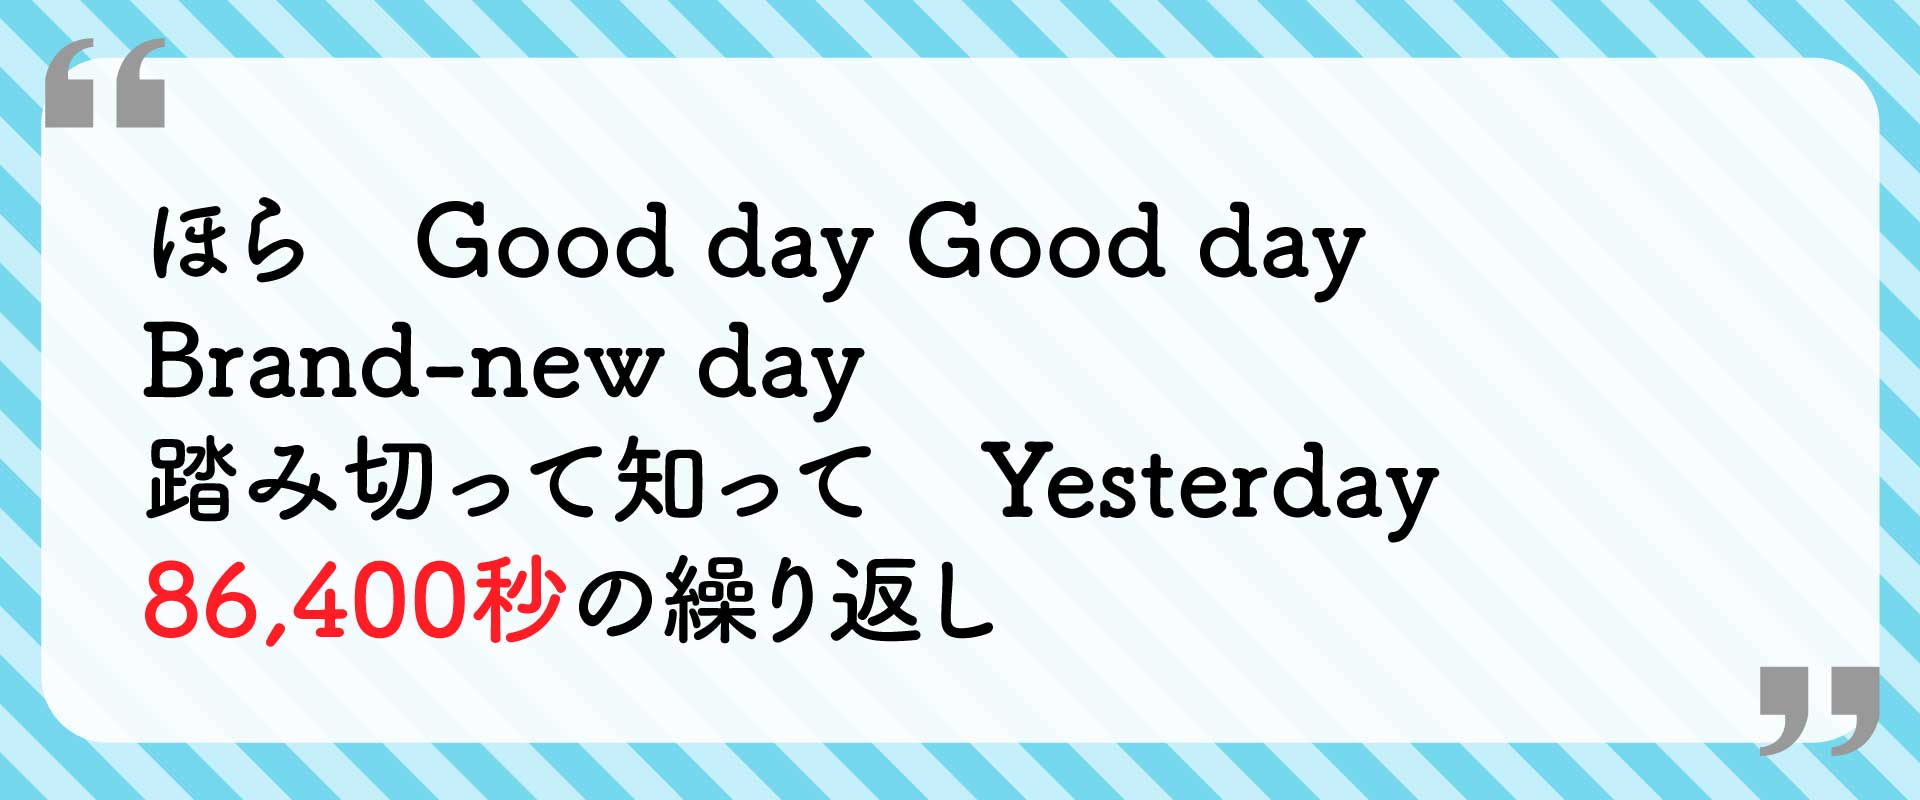 ほら Good day Good day Brand-new day 踏み切って知って Yesterday 86,400秒の繰り返し